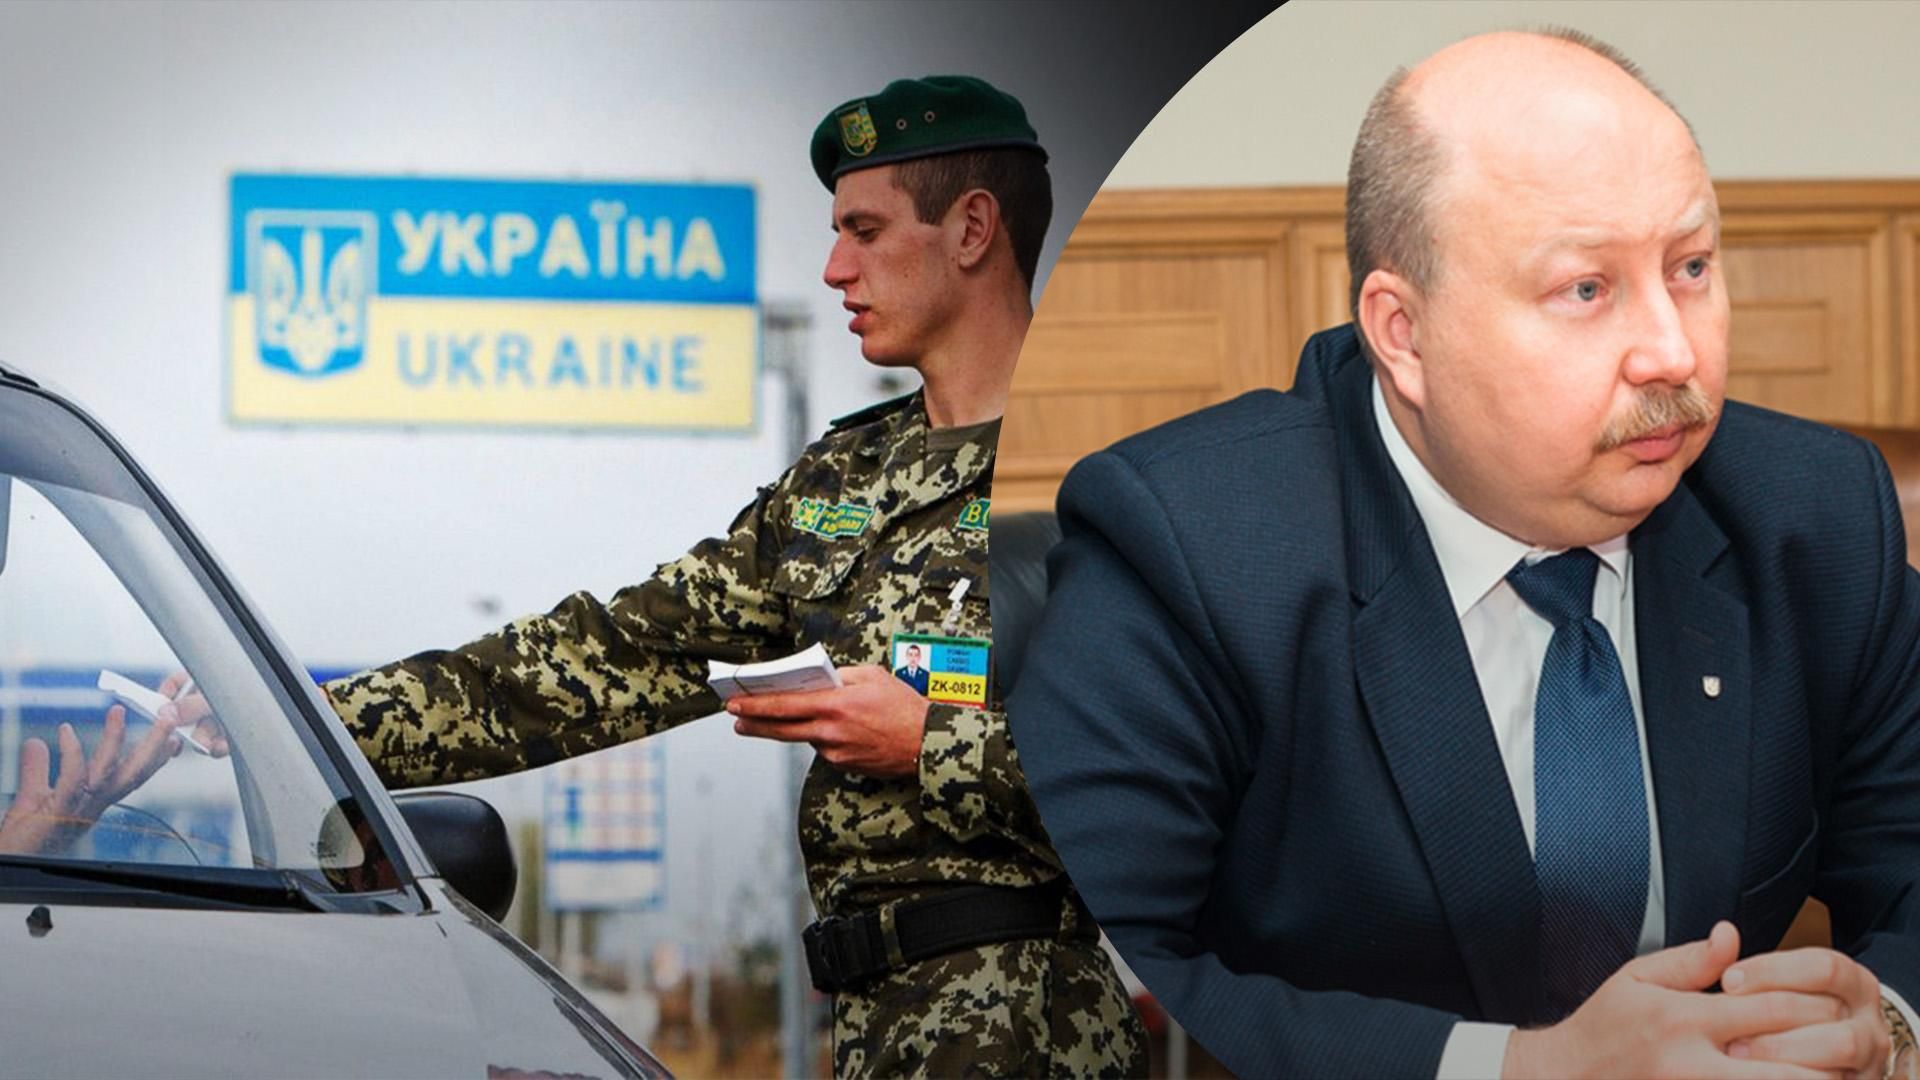 МЗС України розробляє механізм видачі віз росіянам, – Немчінов